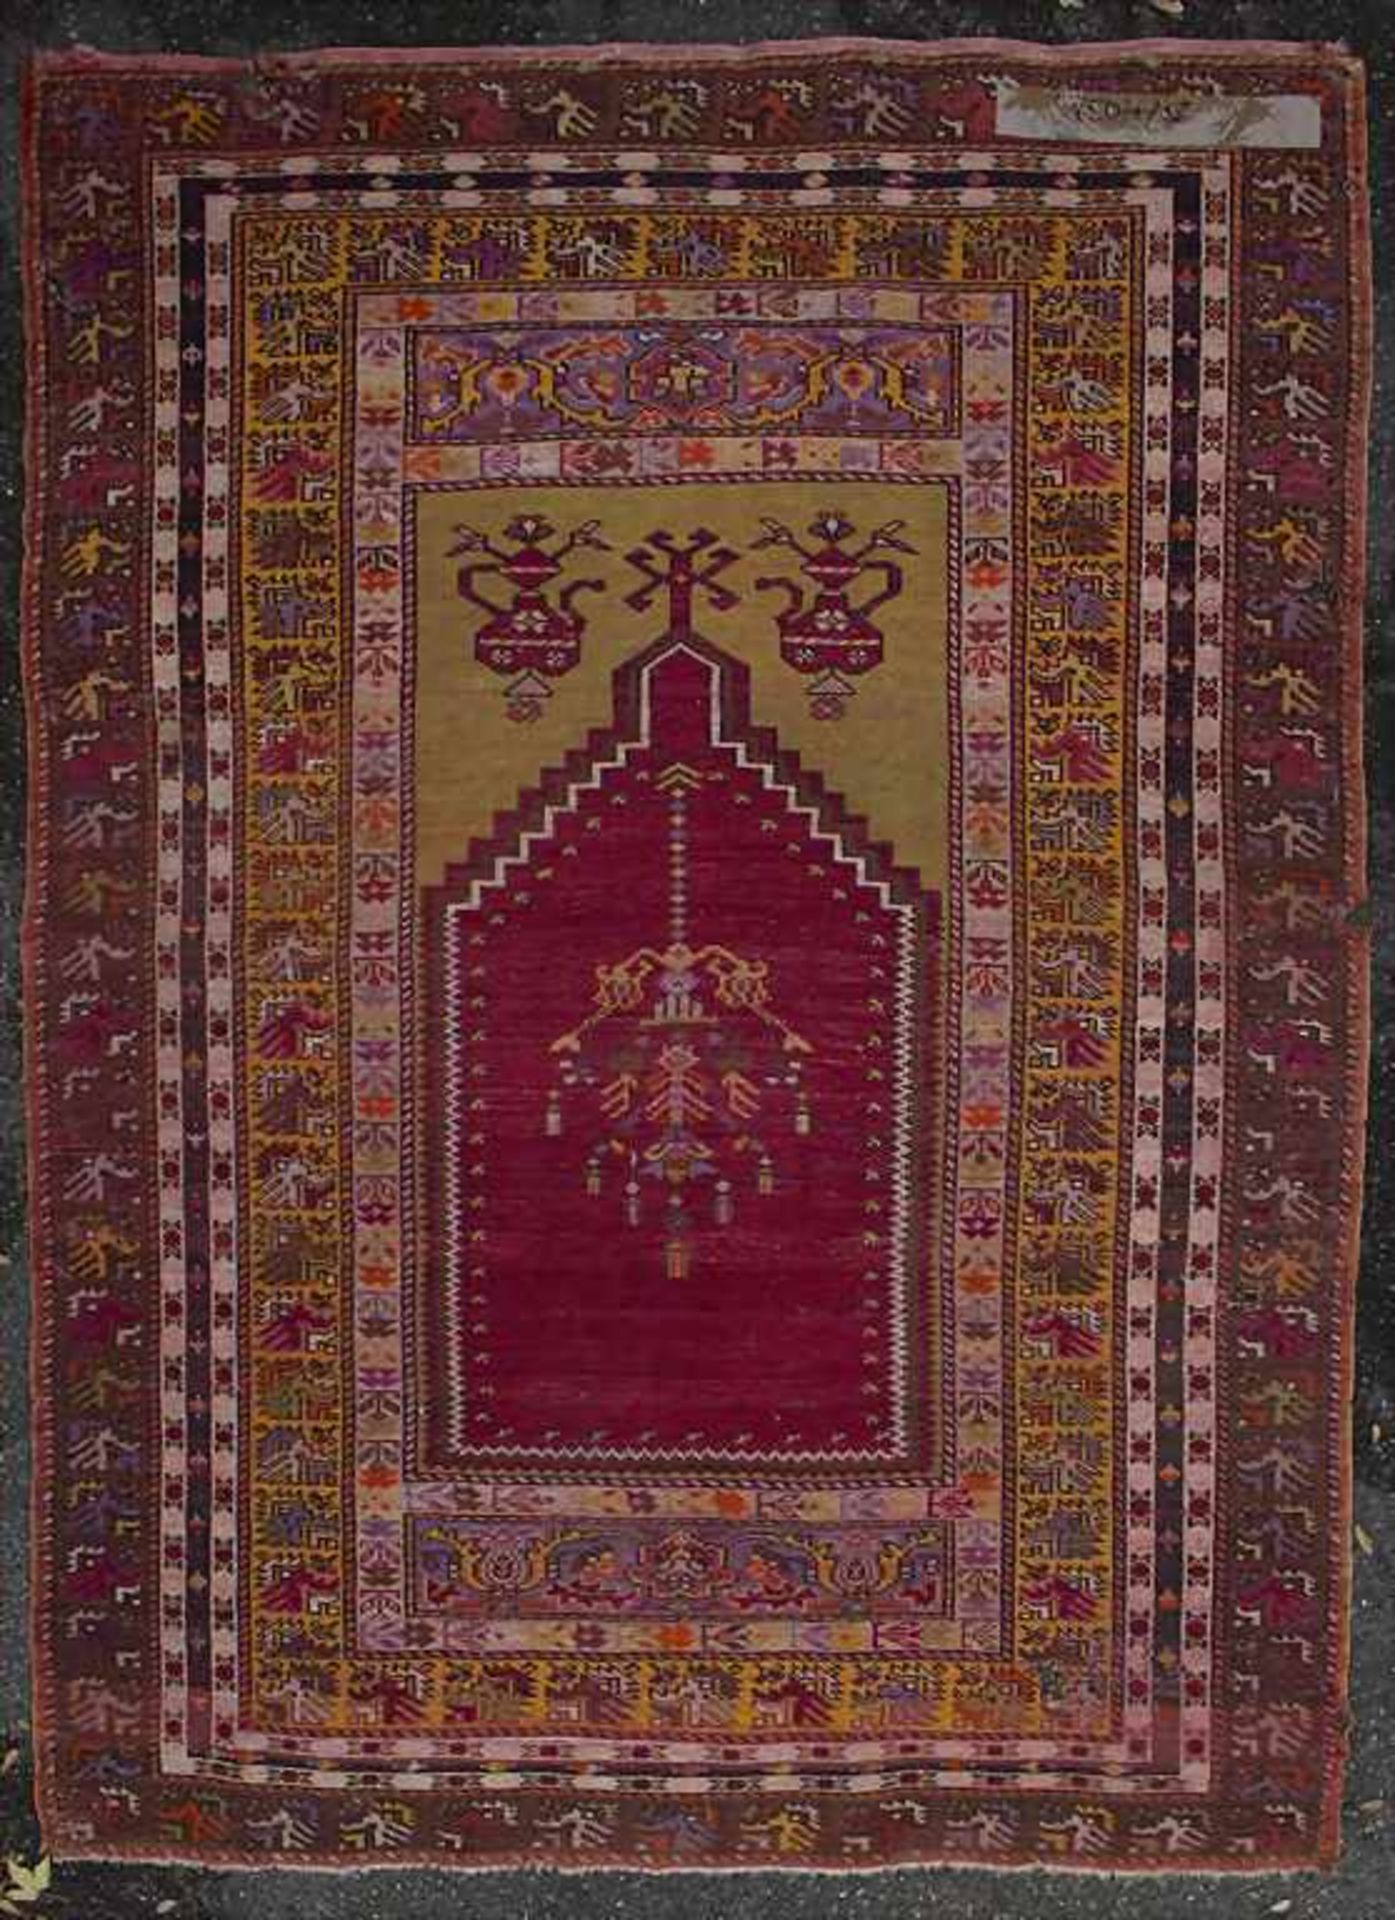 Orientteppich mit Gebetsnische / An oriental carpet with mihrabMaterial: Wolle auf Baumwolle, - Image 2 of 3